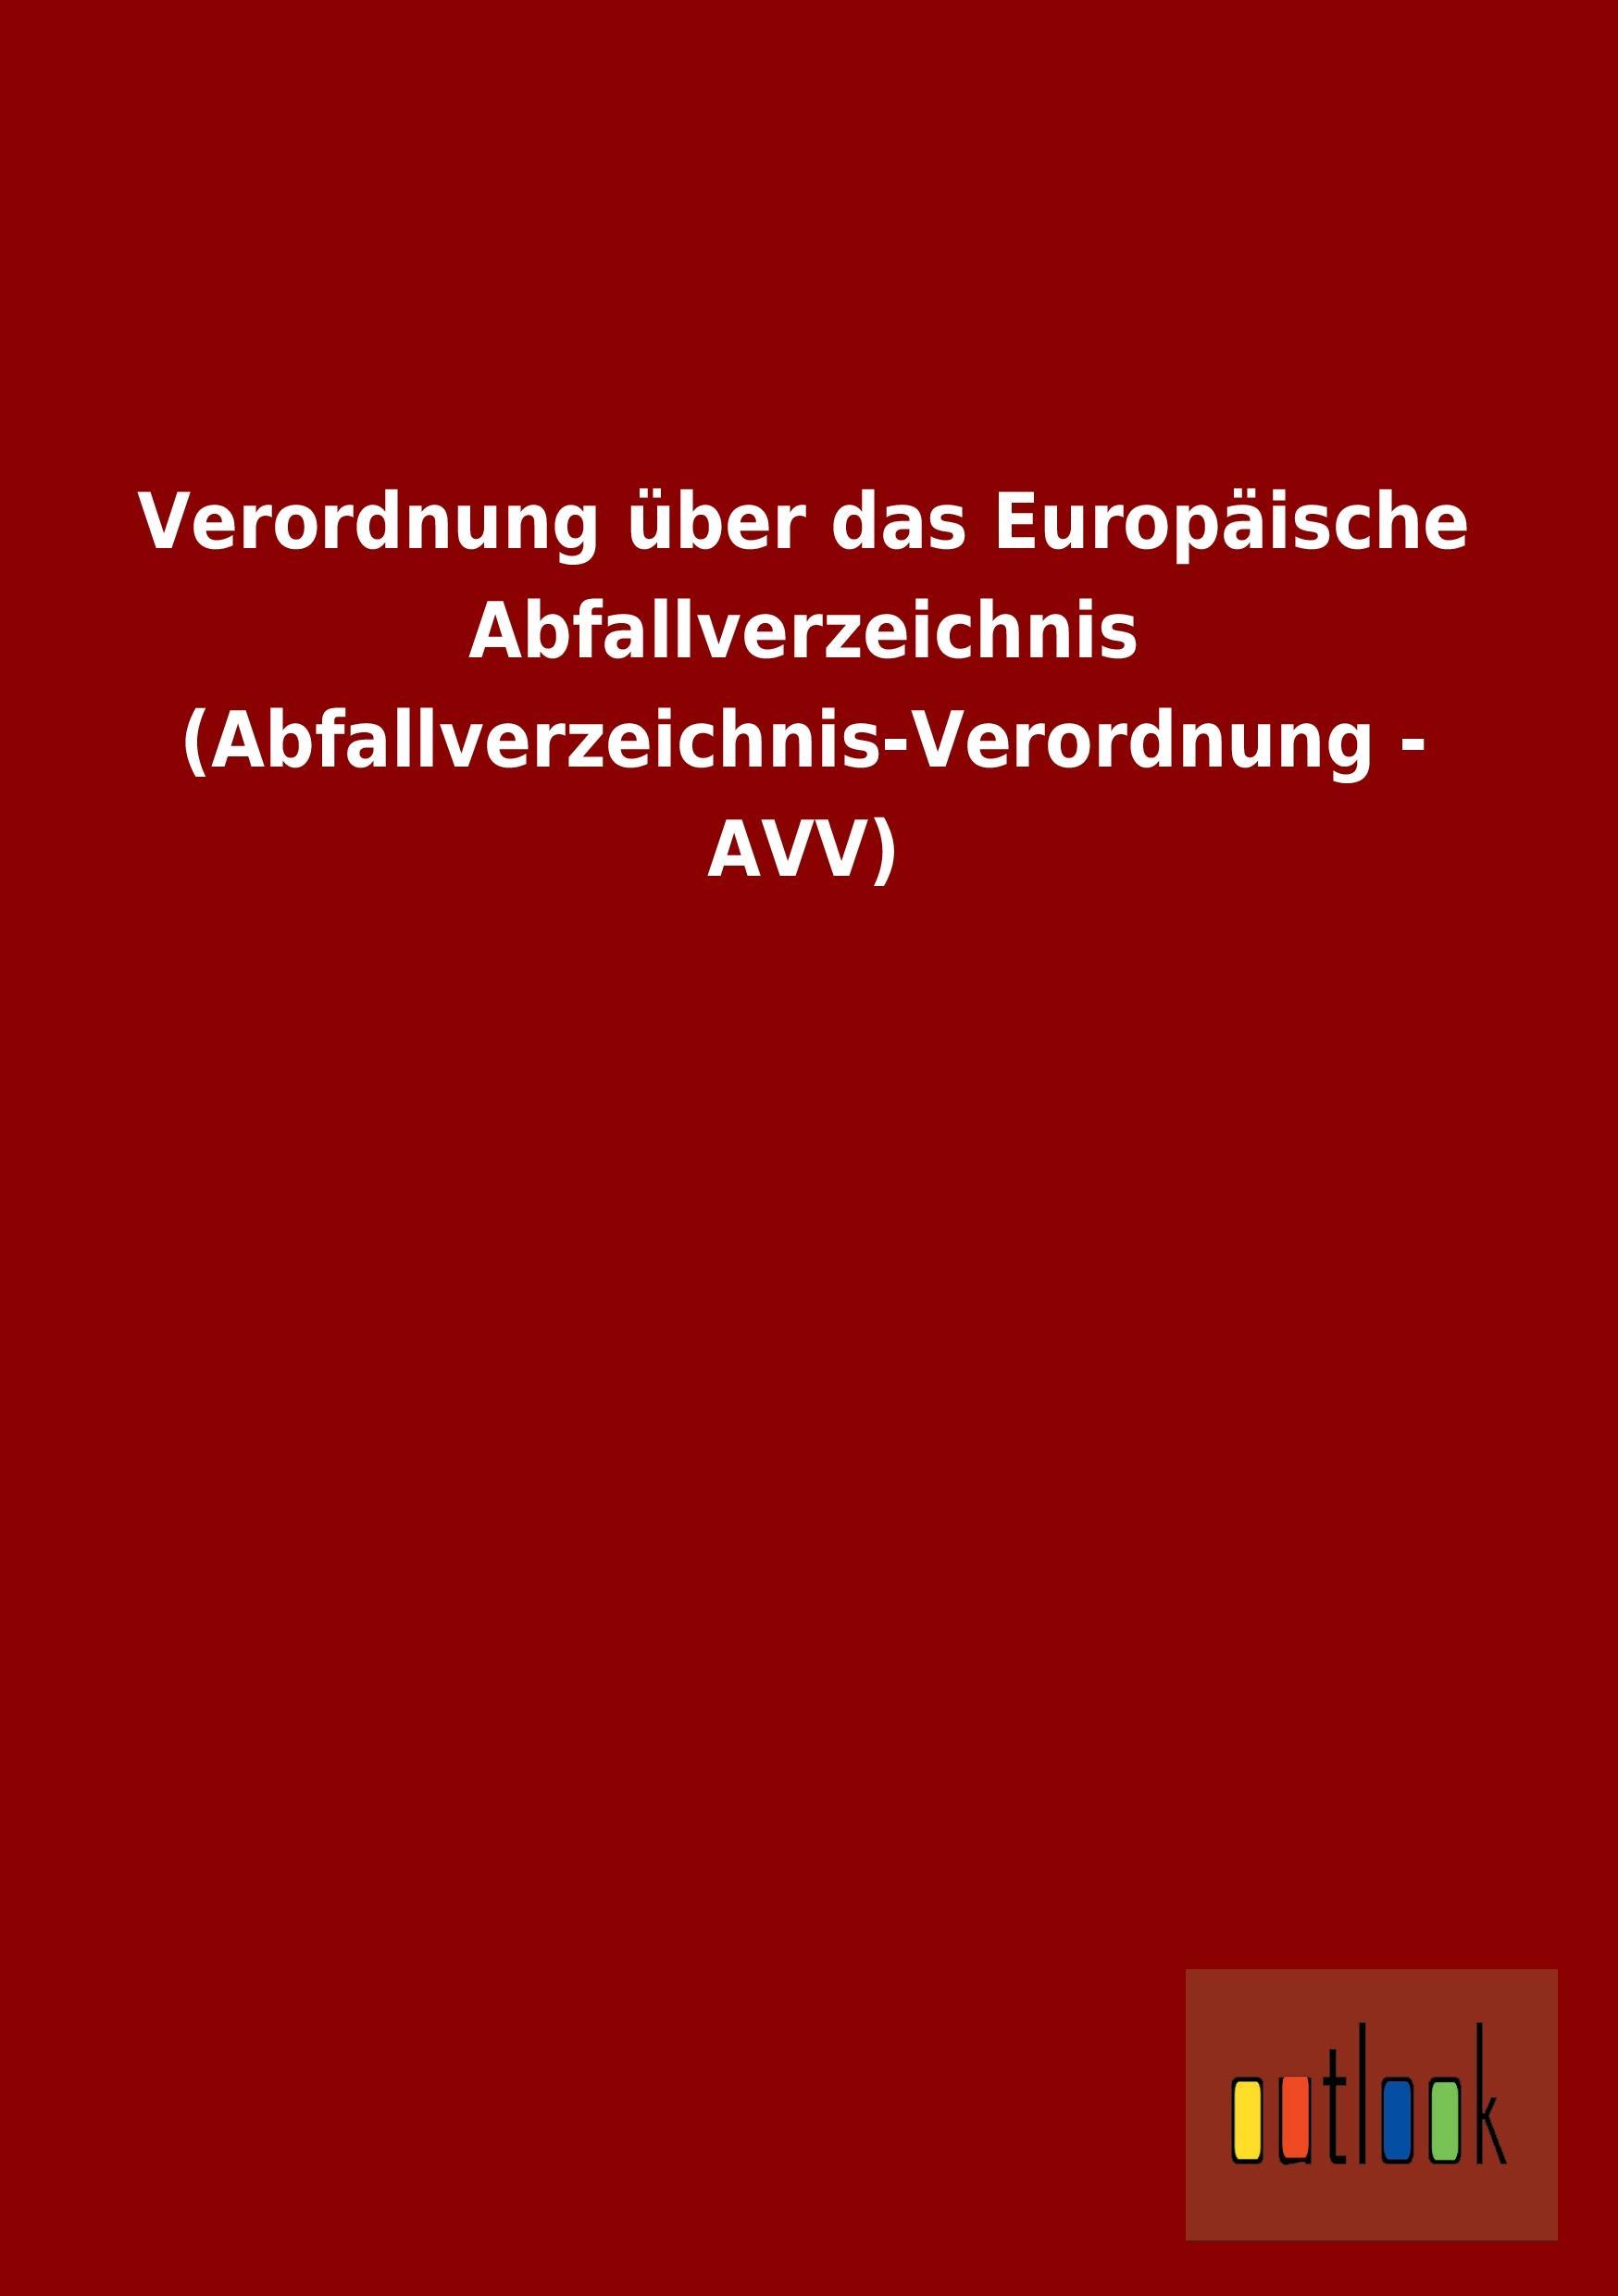 Verordnung ueber das Europaeische Abfallverzeichnis (Abfallverzeichnis-Verordnung - AVV)